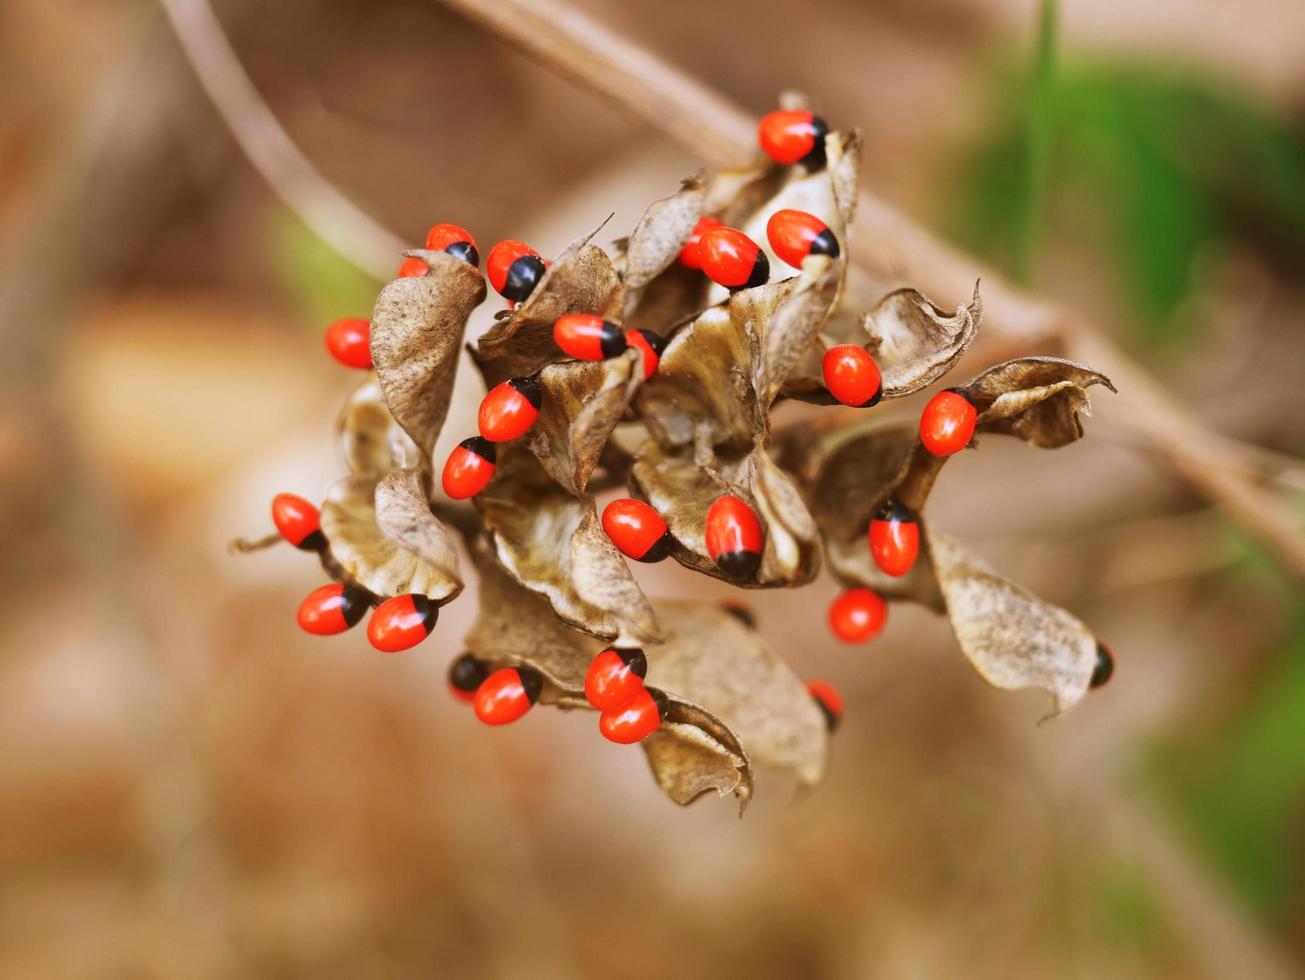 abrus precatorius avec une boule rouge vif, une petite graine rouge qui ressemble à un chapelet ou à une perle. photo